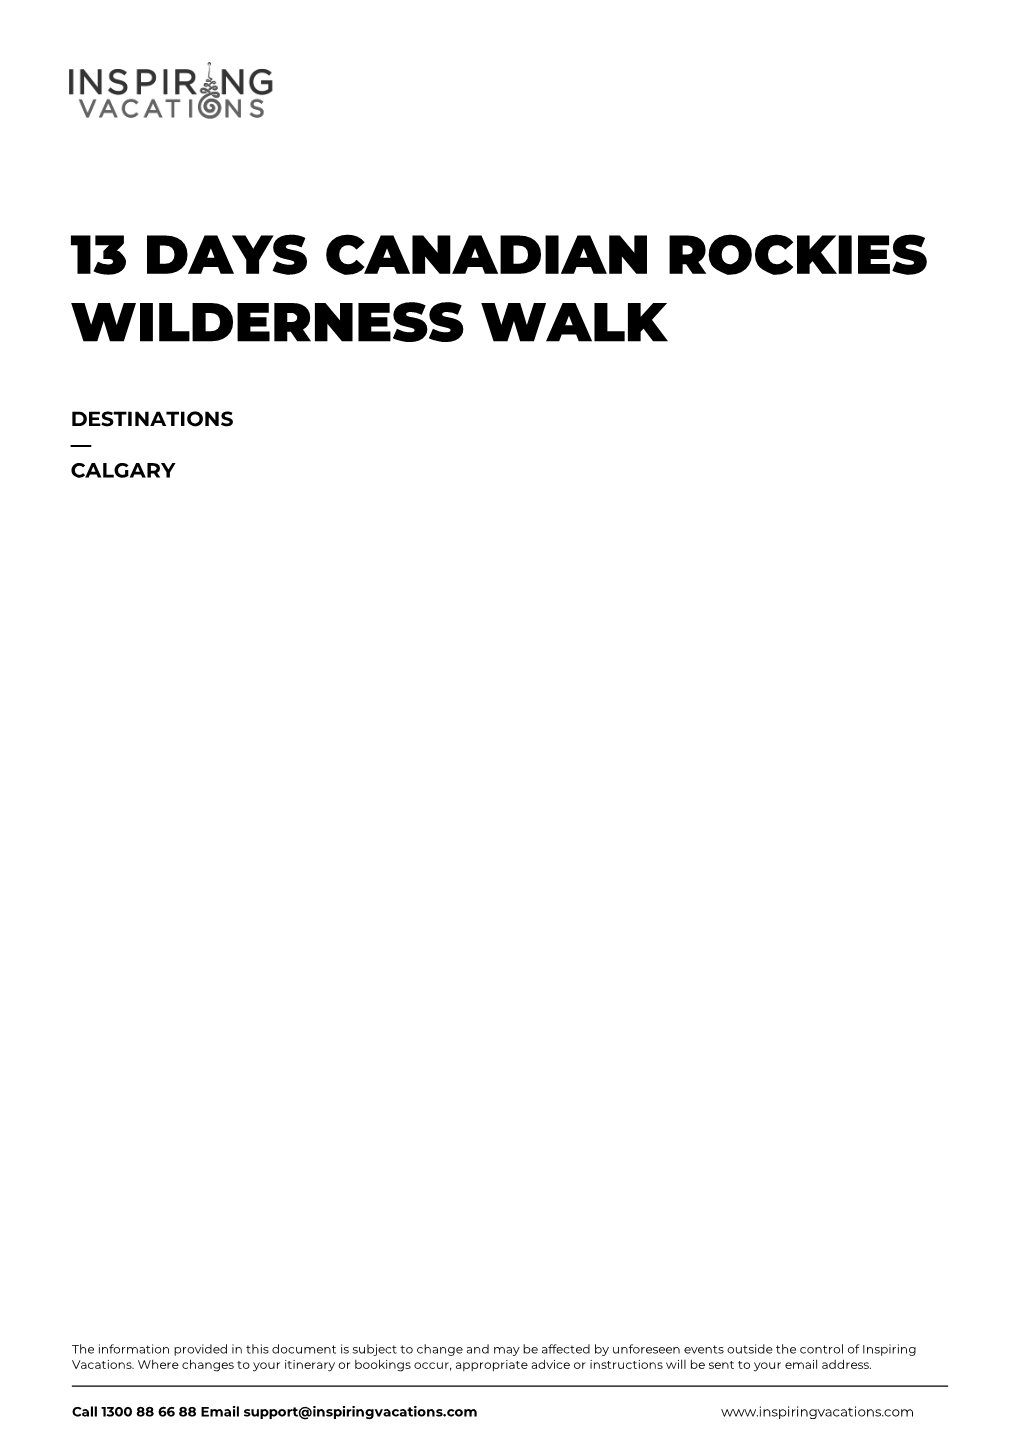 13 Days Canadian Rockies Wilderness Walk